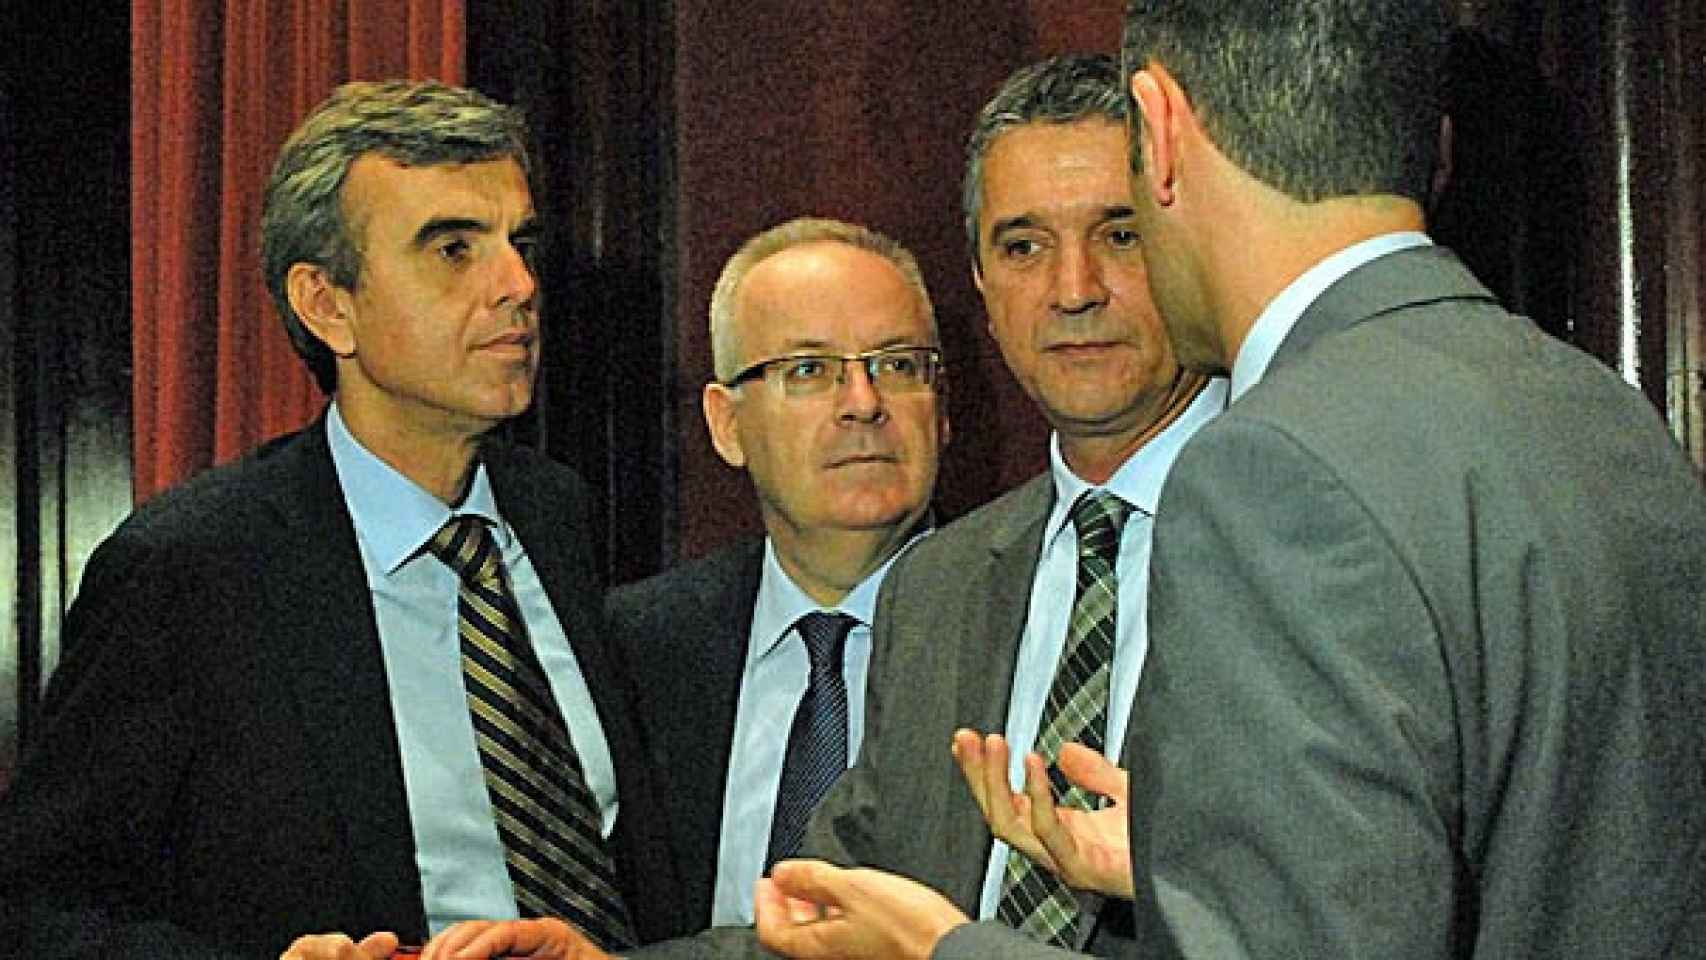 El director de Catalunya Ràdio, Fèlix Riera; el presidente del Consejo de Gobierno de la CCMA, Brauli Duart; y el director de TV3, Eugeni Sallent, durante una sesión de la comisión de control del organismo.